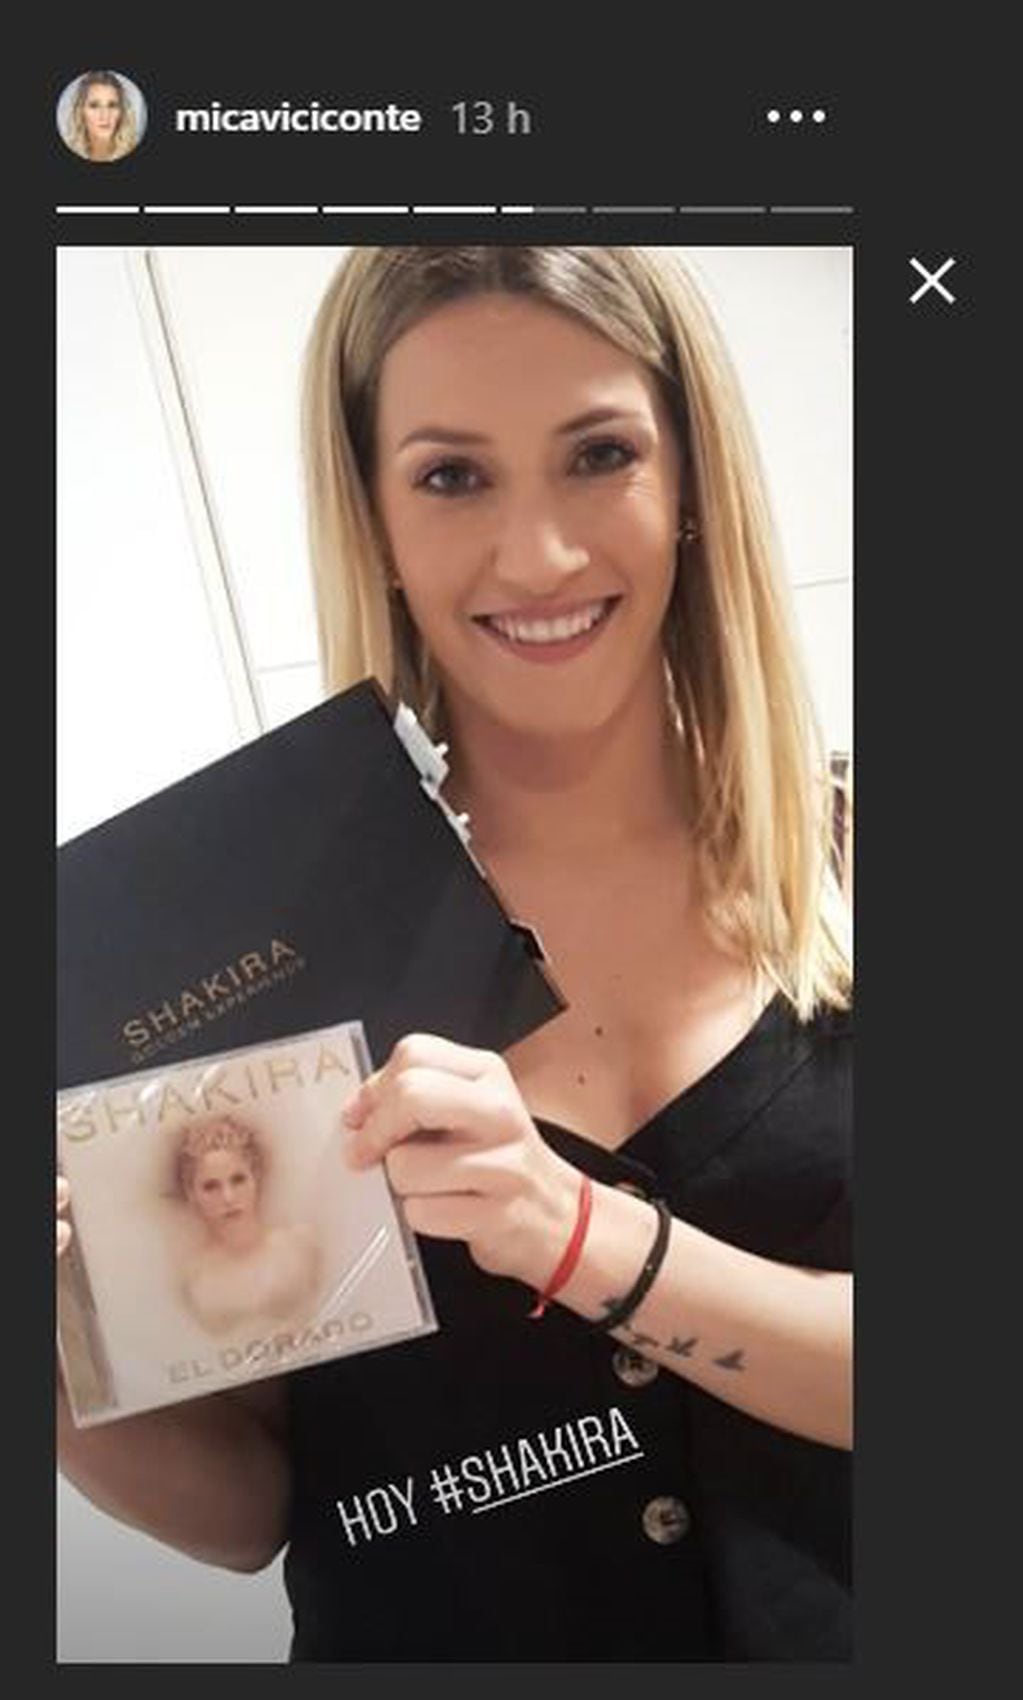 Primero, Mica Viciconte mostró que ya tenía en su poder el nuevo disco de Shakira